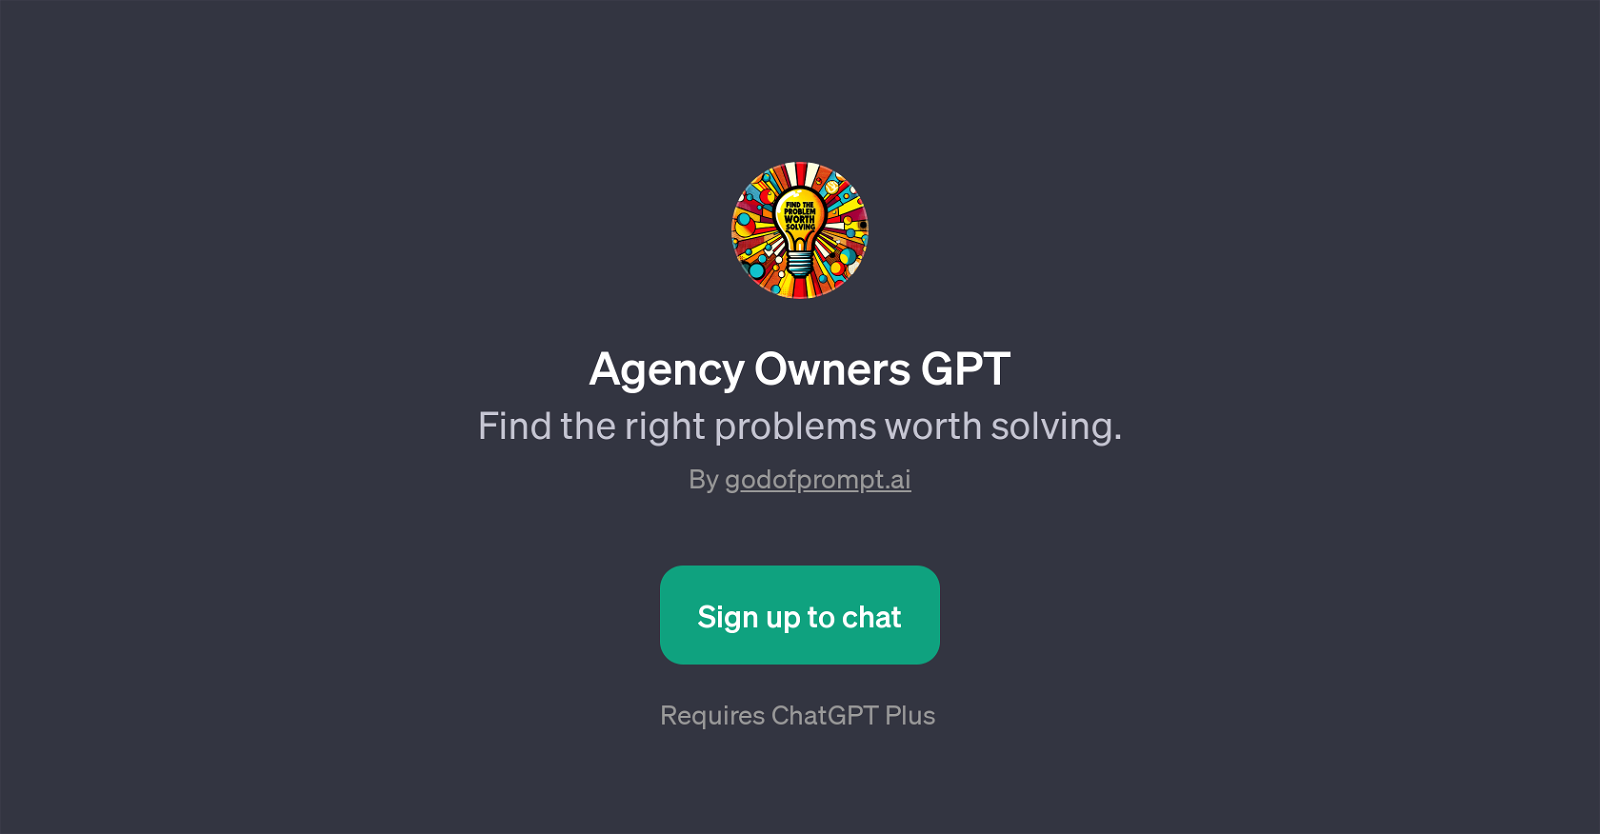 Agency Owners GPT website